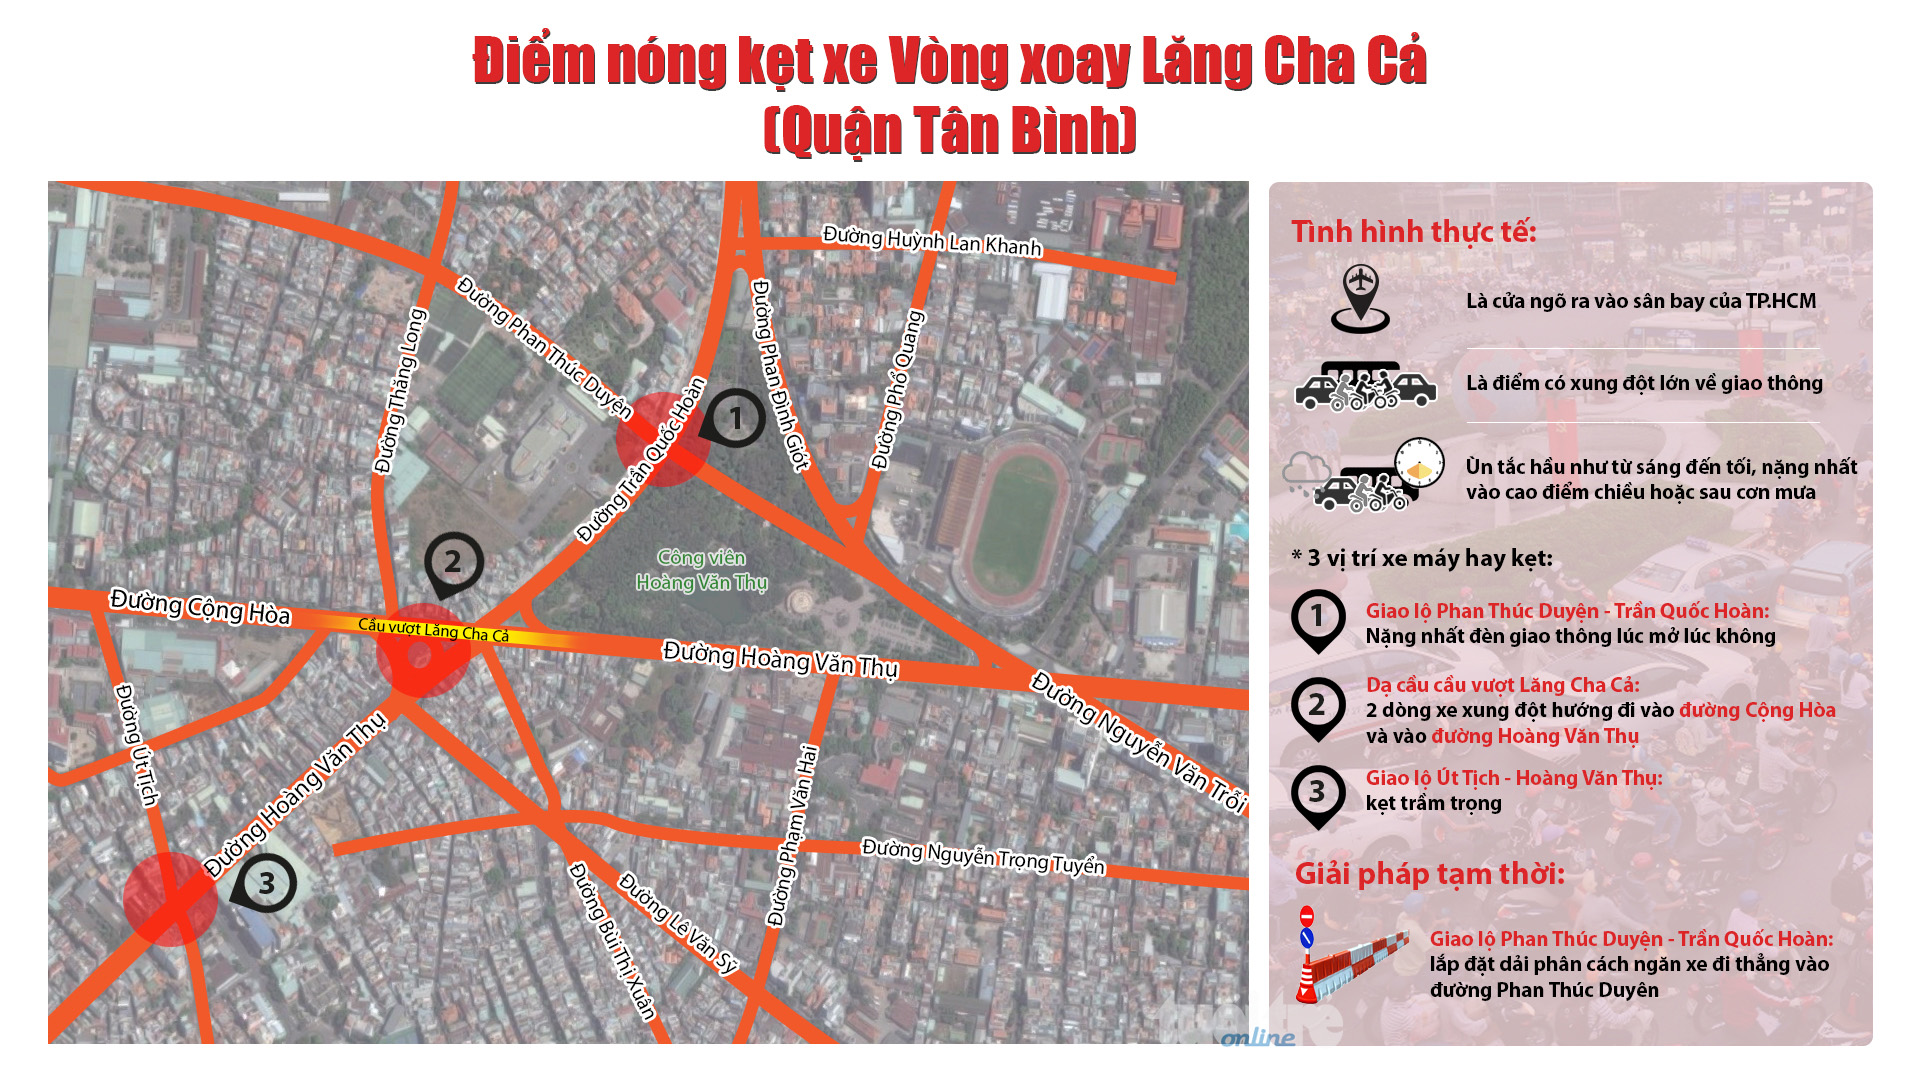 Điểm nóng kẹt xe vòng xoay Lăng Cha Cả (quận Tân Bình): thực trạng và giải pháp đề xuất - Đồ họa: Việt Thái - T.Thiên